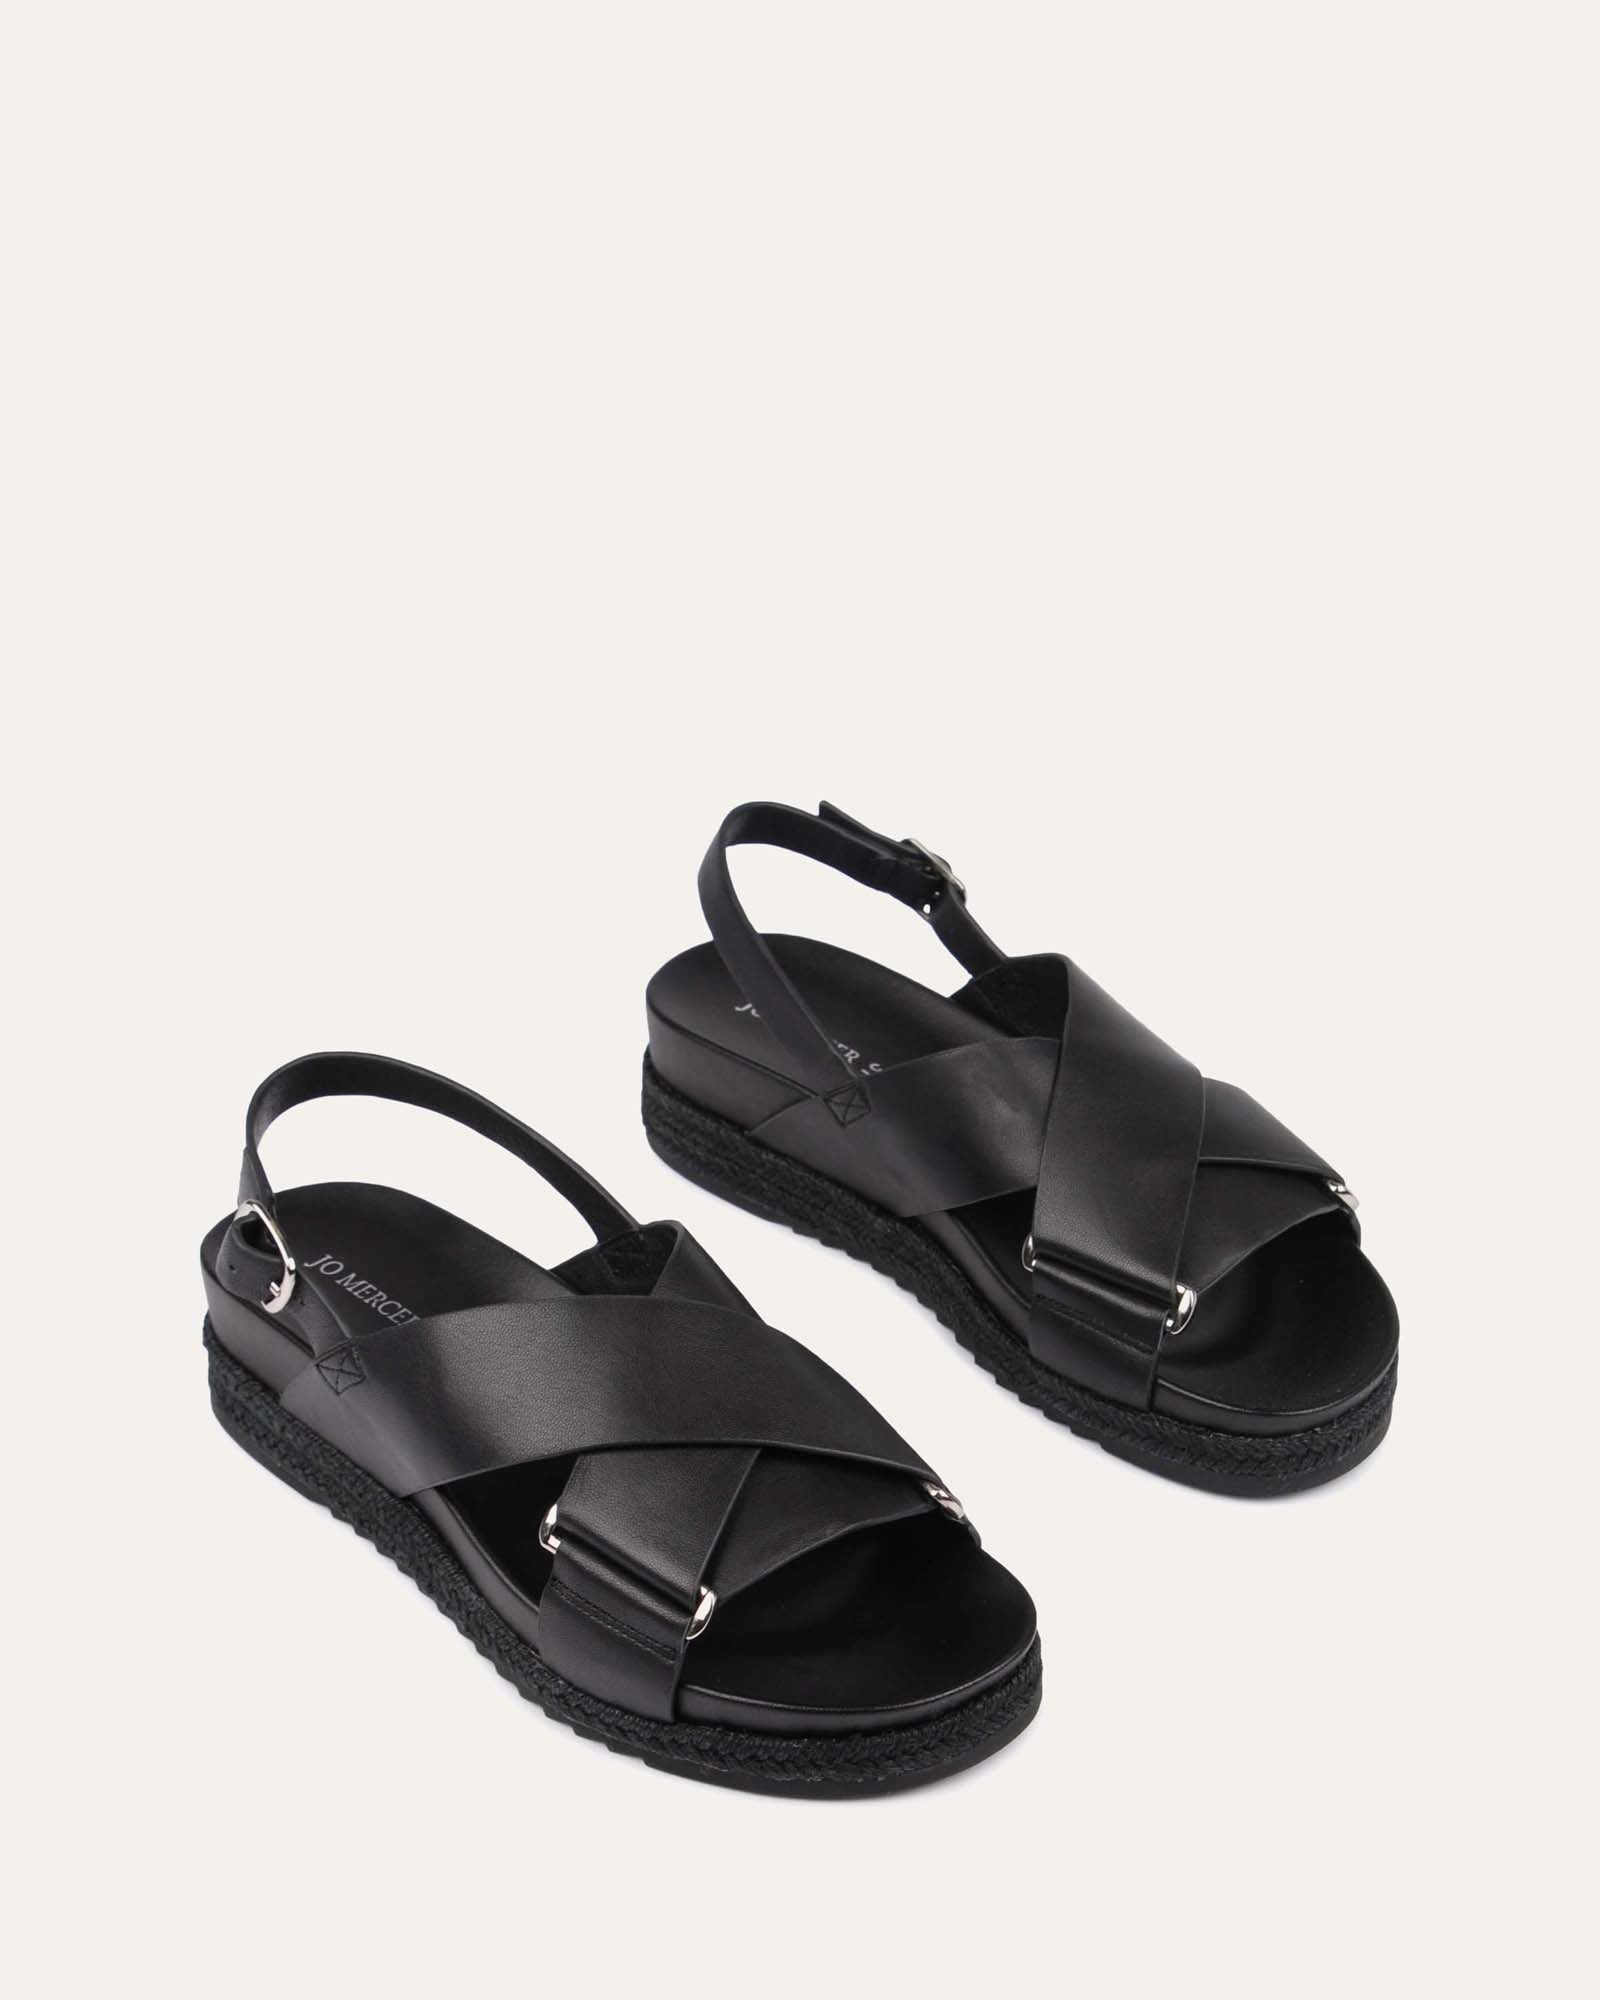 Aldo Leather Sandals Women UK 6 Black Wedges NEW SUMMER SHOES Holiday  Meresha | eBay